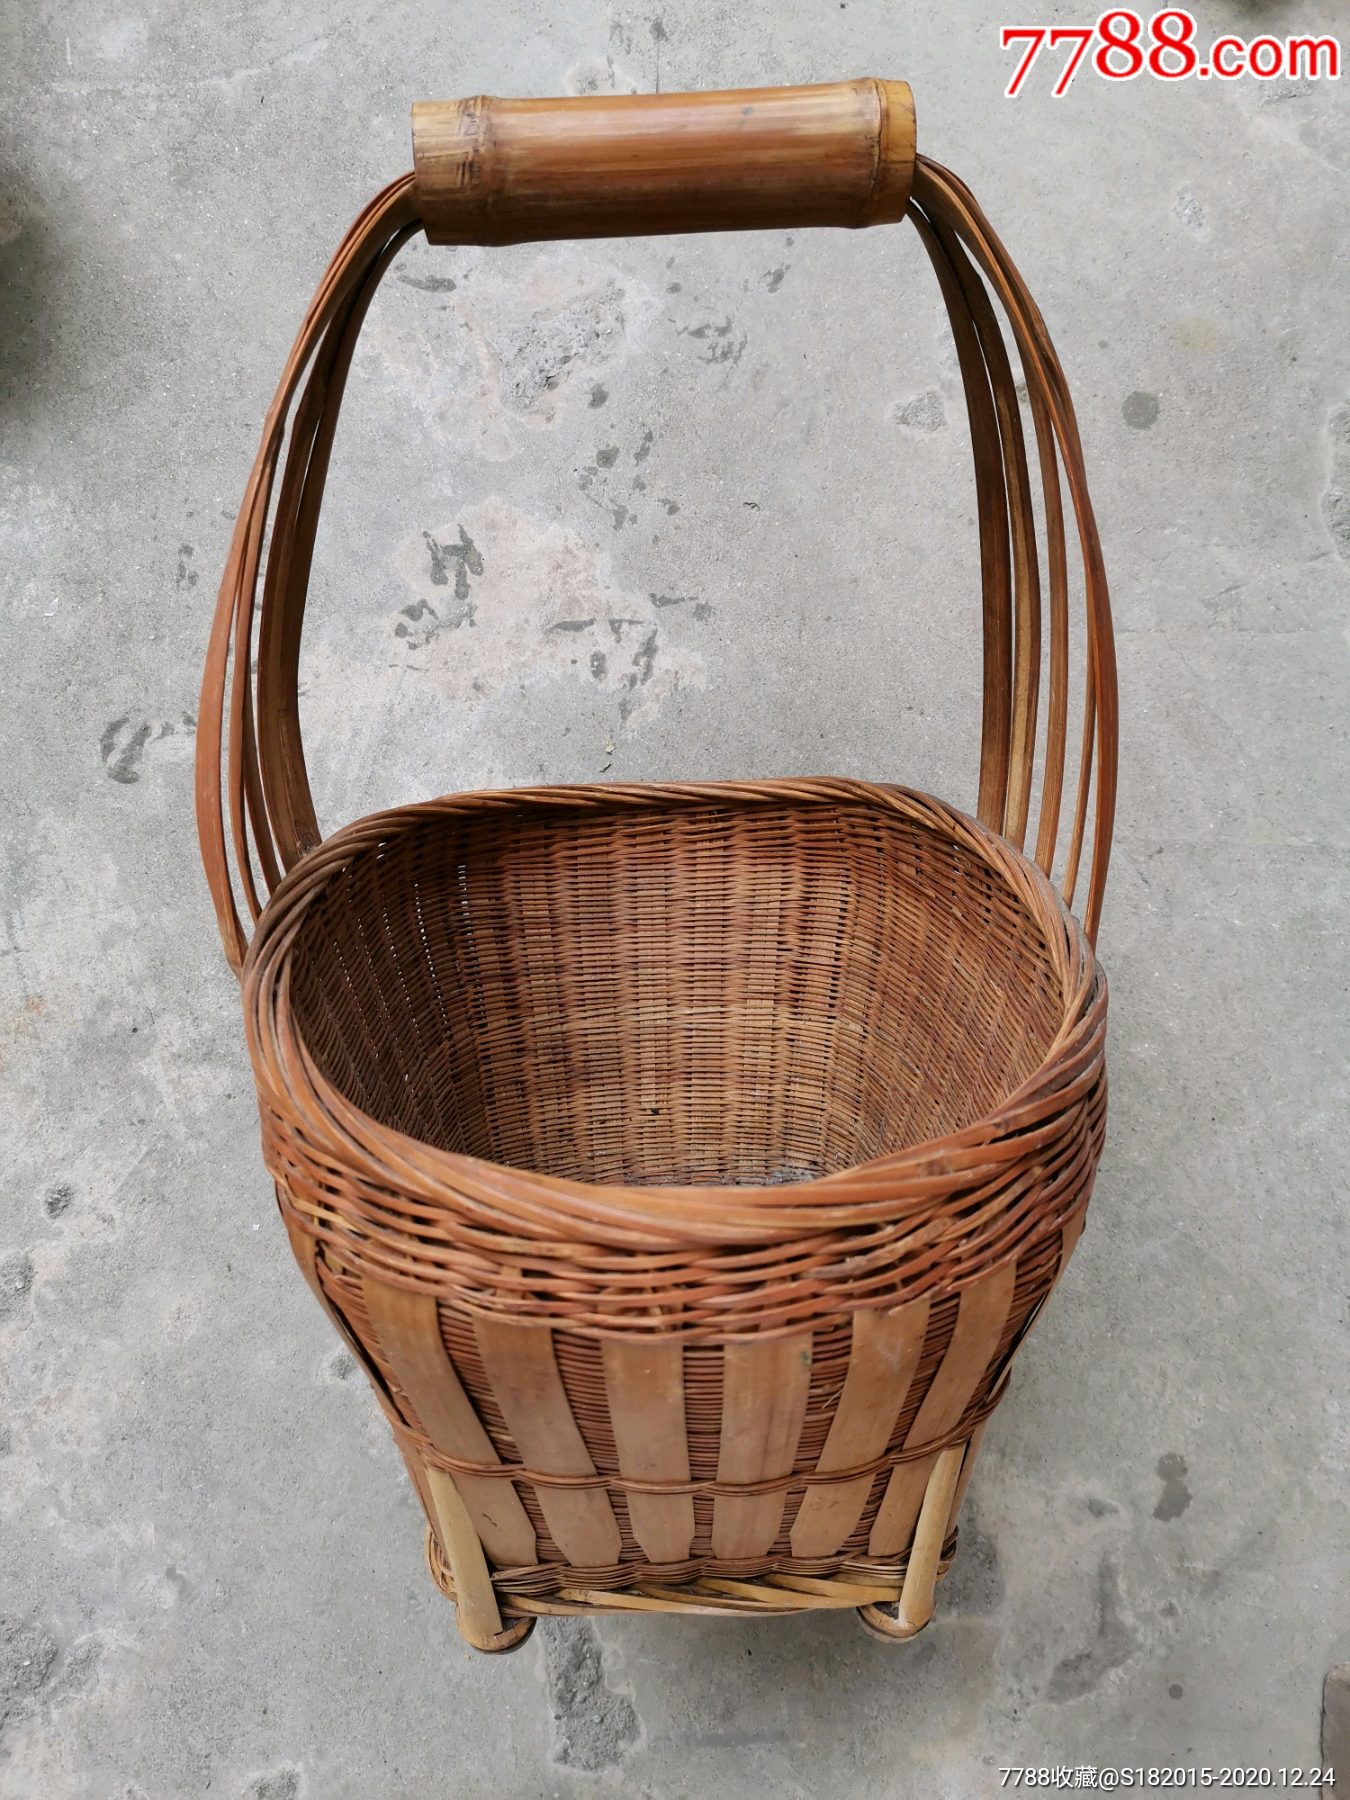 云南少数民族用的竹篮子一个